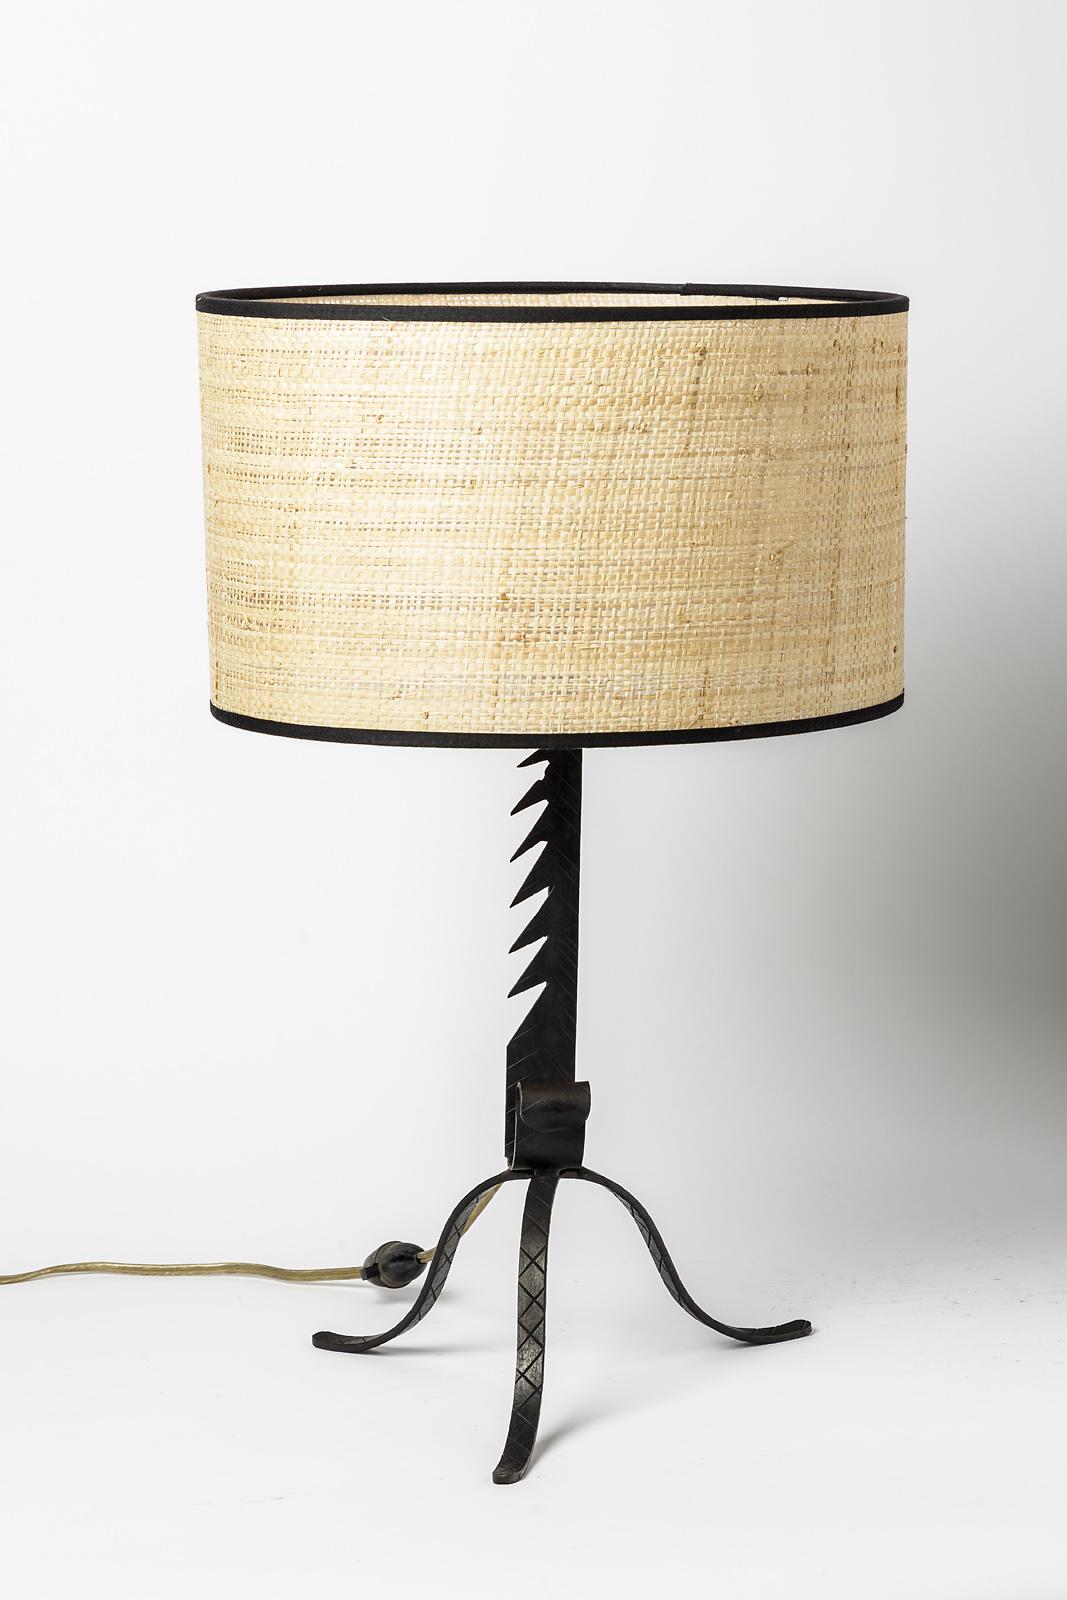 Lampe de table brutaliste

Lampe de table originale en métal noir

20ème siècle Brutalist handmade design

Pièce unique

Vendu avec abat-jour

Dimensions de la lampe sans l'abat-jour : hauteur 31 cm, largeur 25 cm.